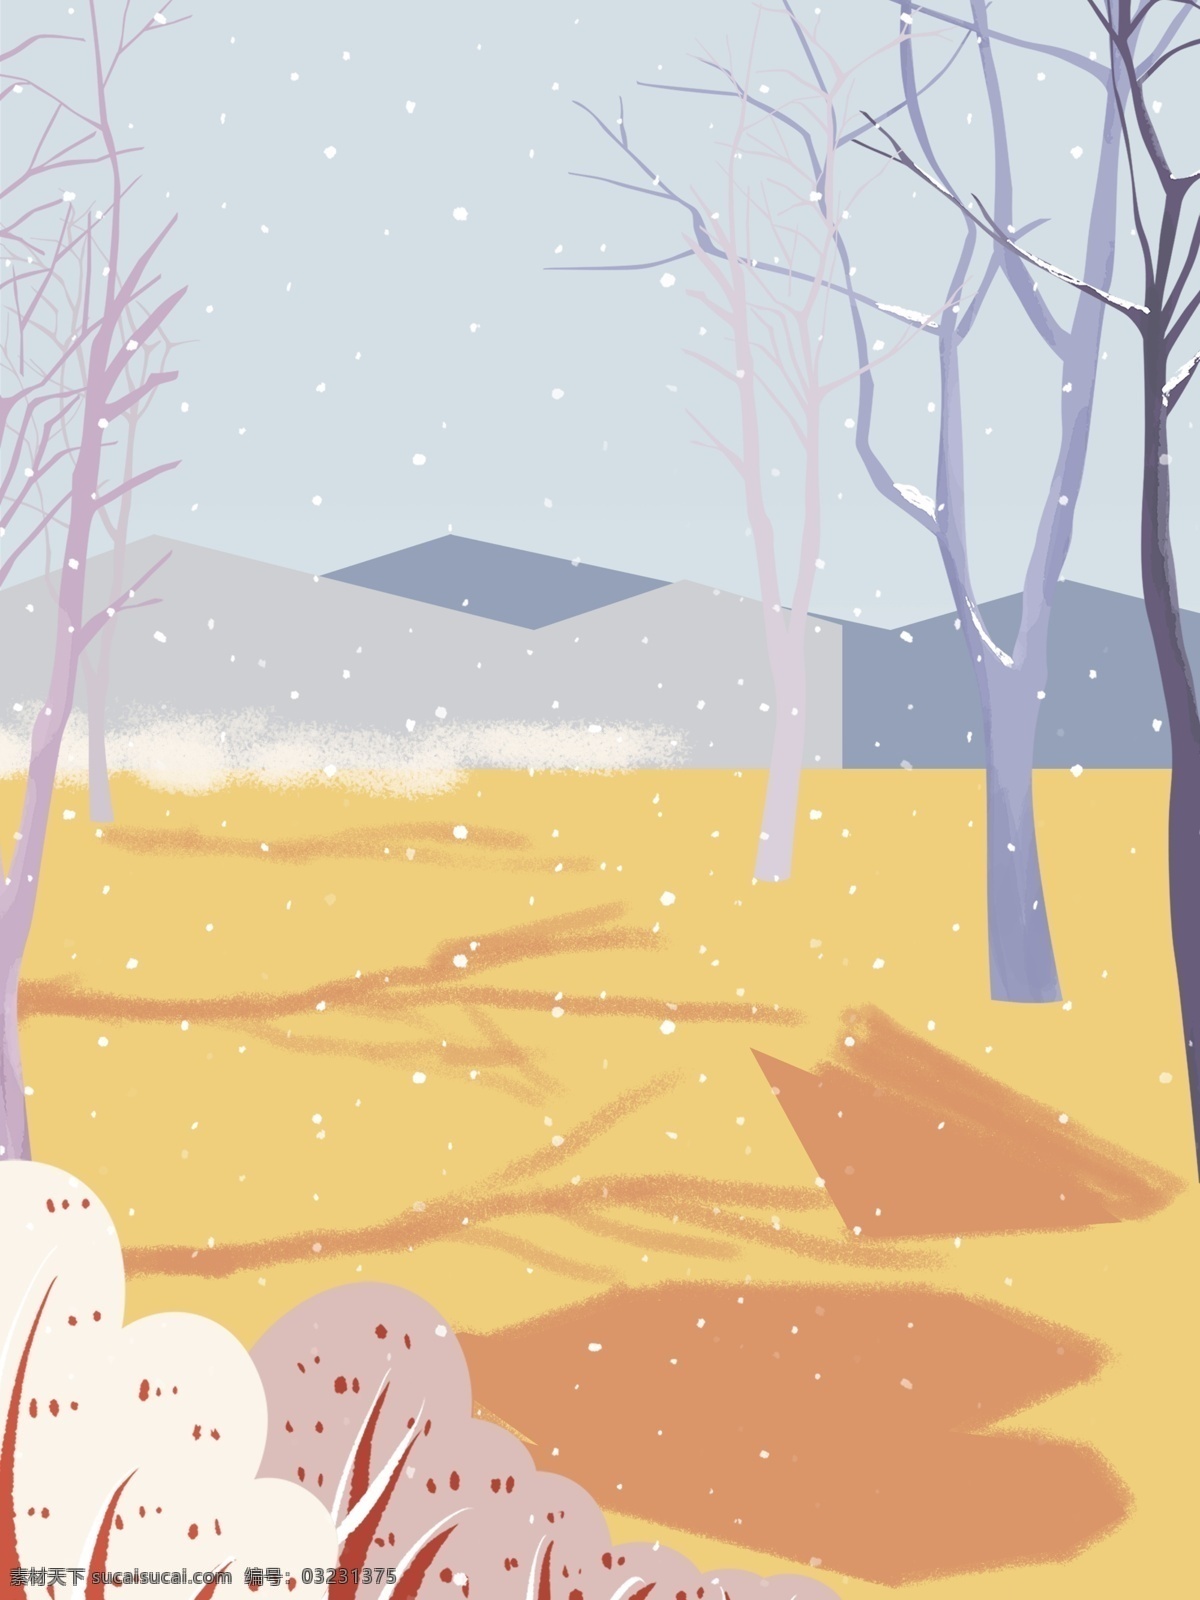 彩绘 时尚 冬季 雪地 树林 背景 雪花 冬天 唯美 雪景 下雪 背景设计 彩绘背景 大寒背景